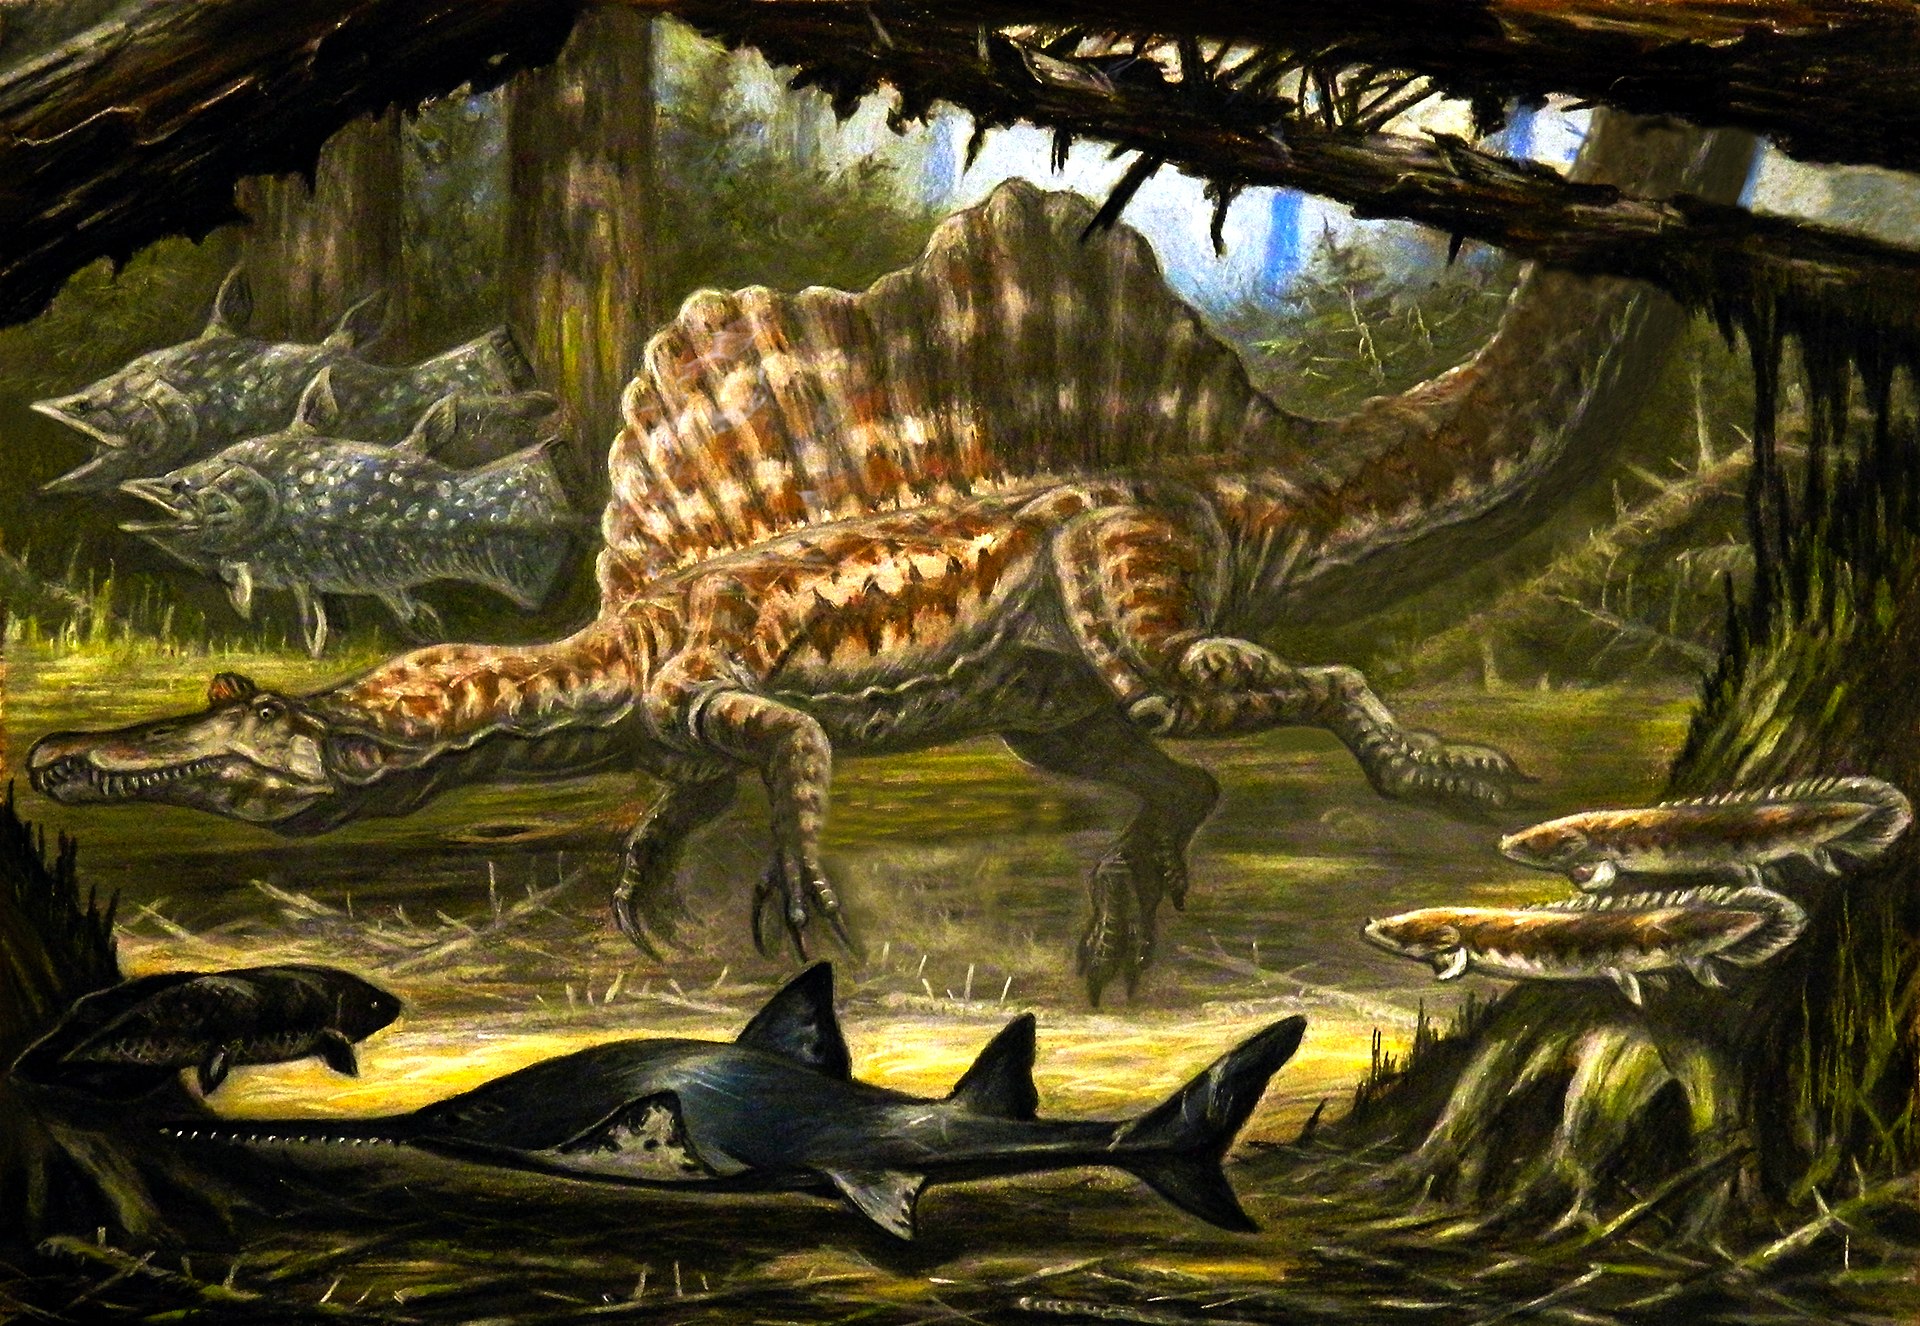 Aegisuchové obývali stejné ekosystémy jako obří „obojživelní“ teropodi spinosauři, kteří s délkou 15 až 18 metrů dosahovali stejných nebo i mírně větších rozměrů. Je možné, že si přímo potravně konkurovali, protože jejich primárním zdrojem potravy by